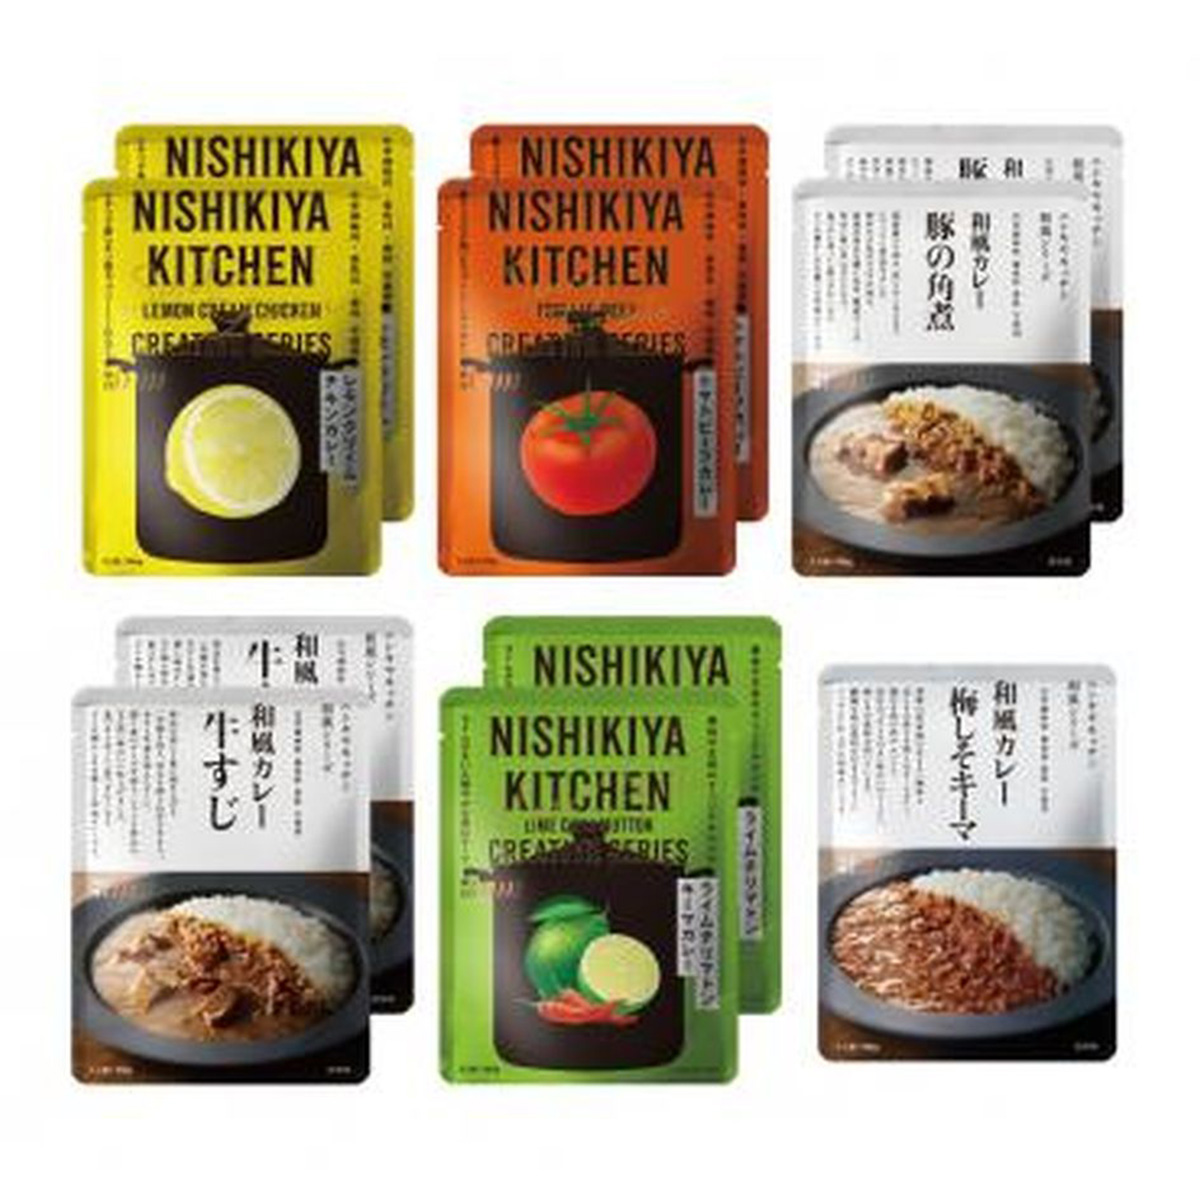 【ギフト】NISHIKIYA KITCHEN人気のカレー(6種)11食セット